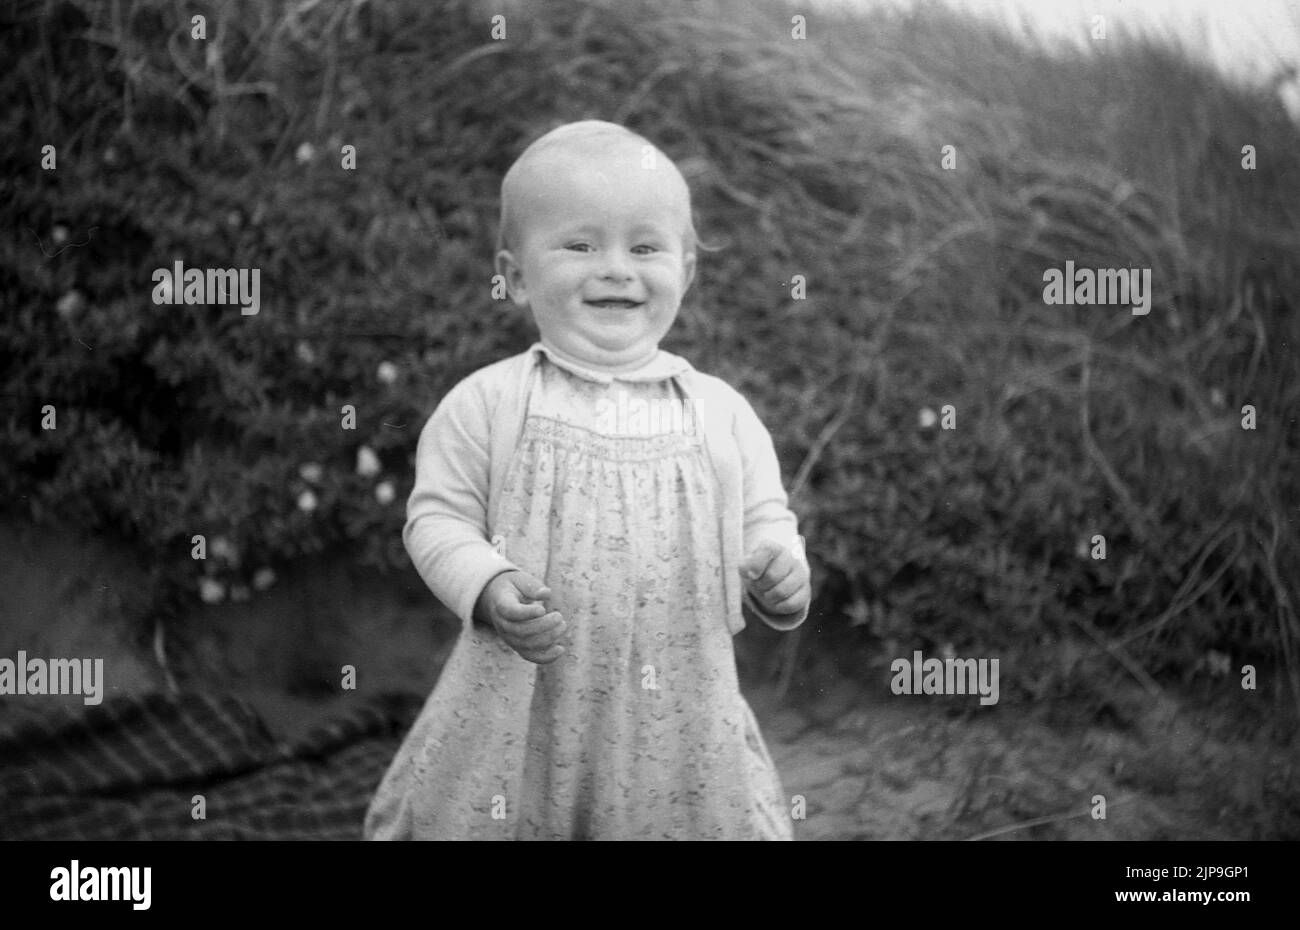 1950, historique, jeune fille à la plage, grin sans rire, Angleterre, Royaume-Uni. Banque D'Images